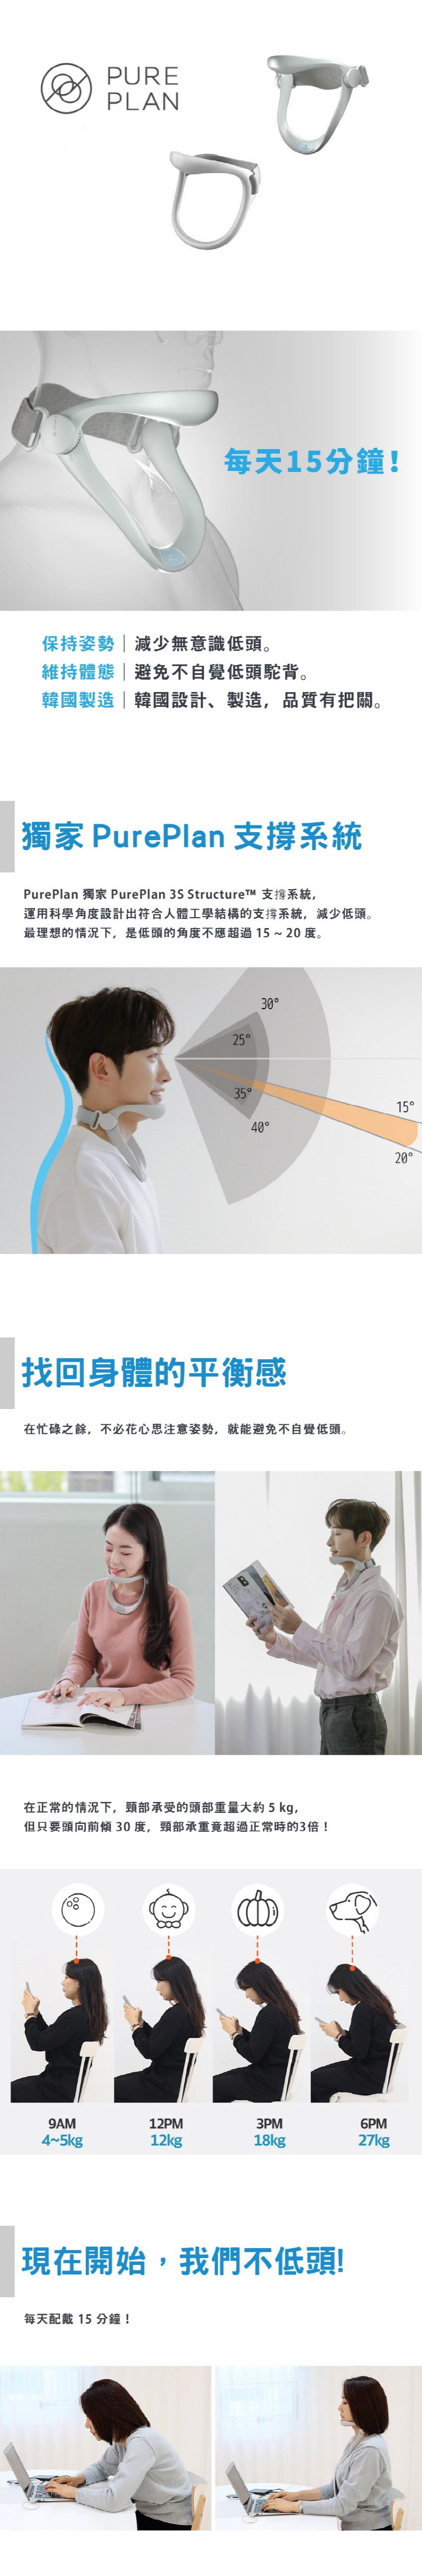 韓國 PurePlan 頸椎保護器-銷售量突破10萬隻 輕型 滿意度96% 1 件